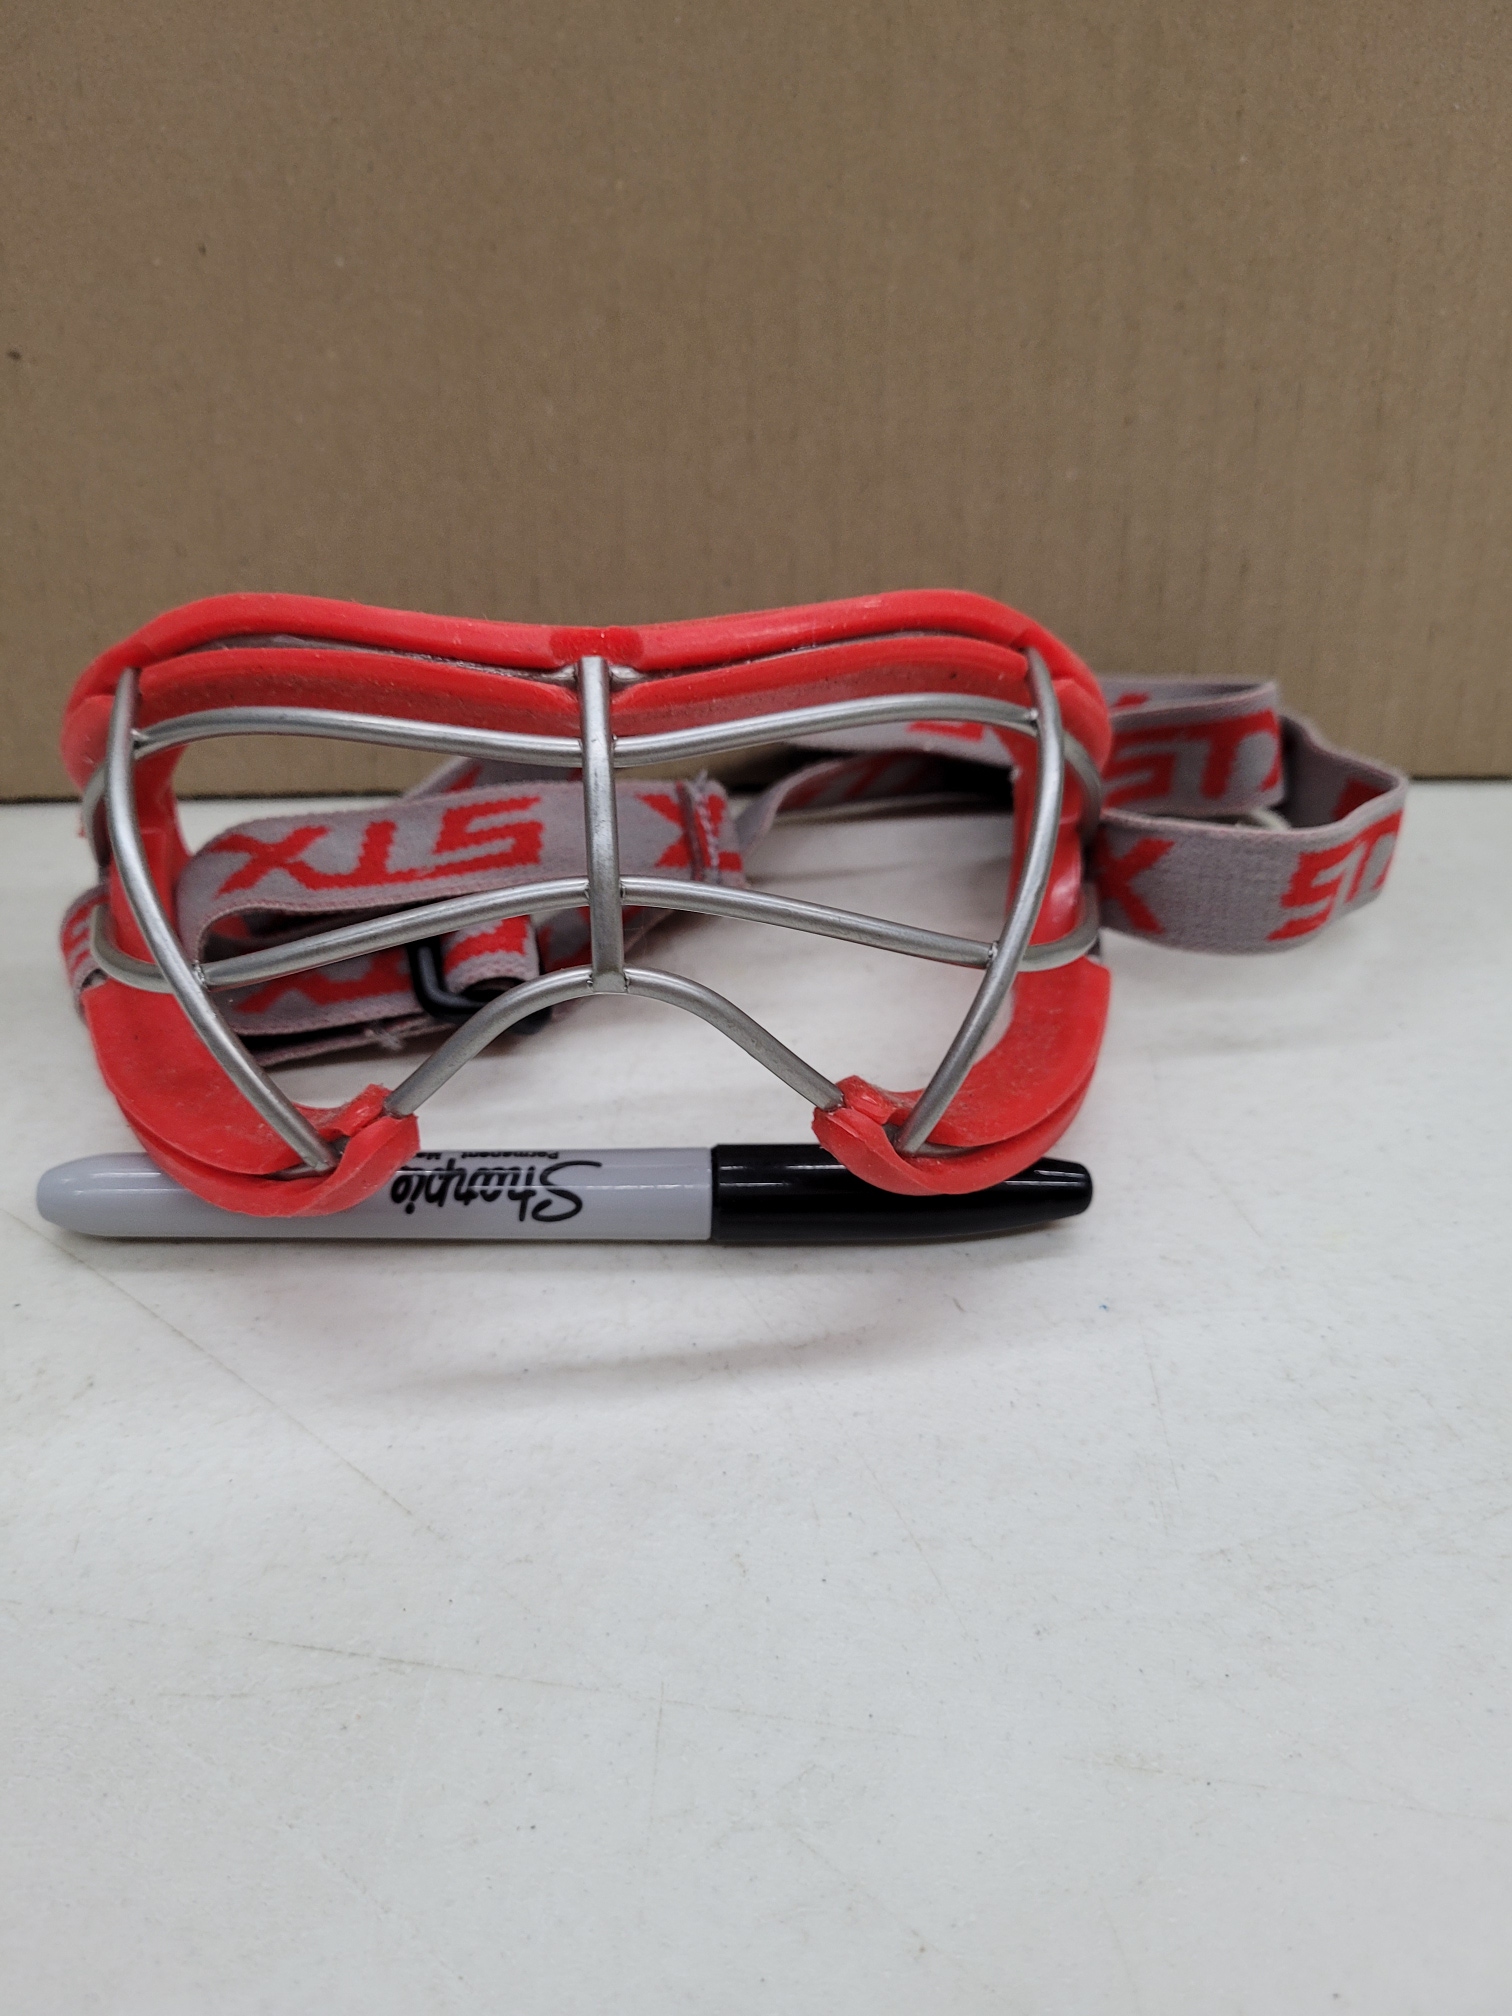 Used Ladies Lacrosse Eye Protection